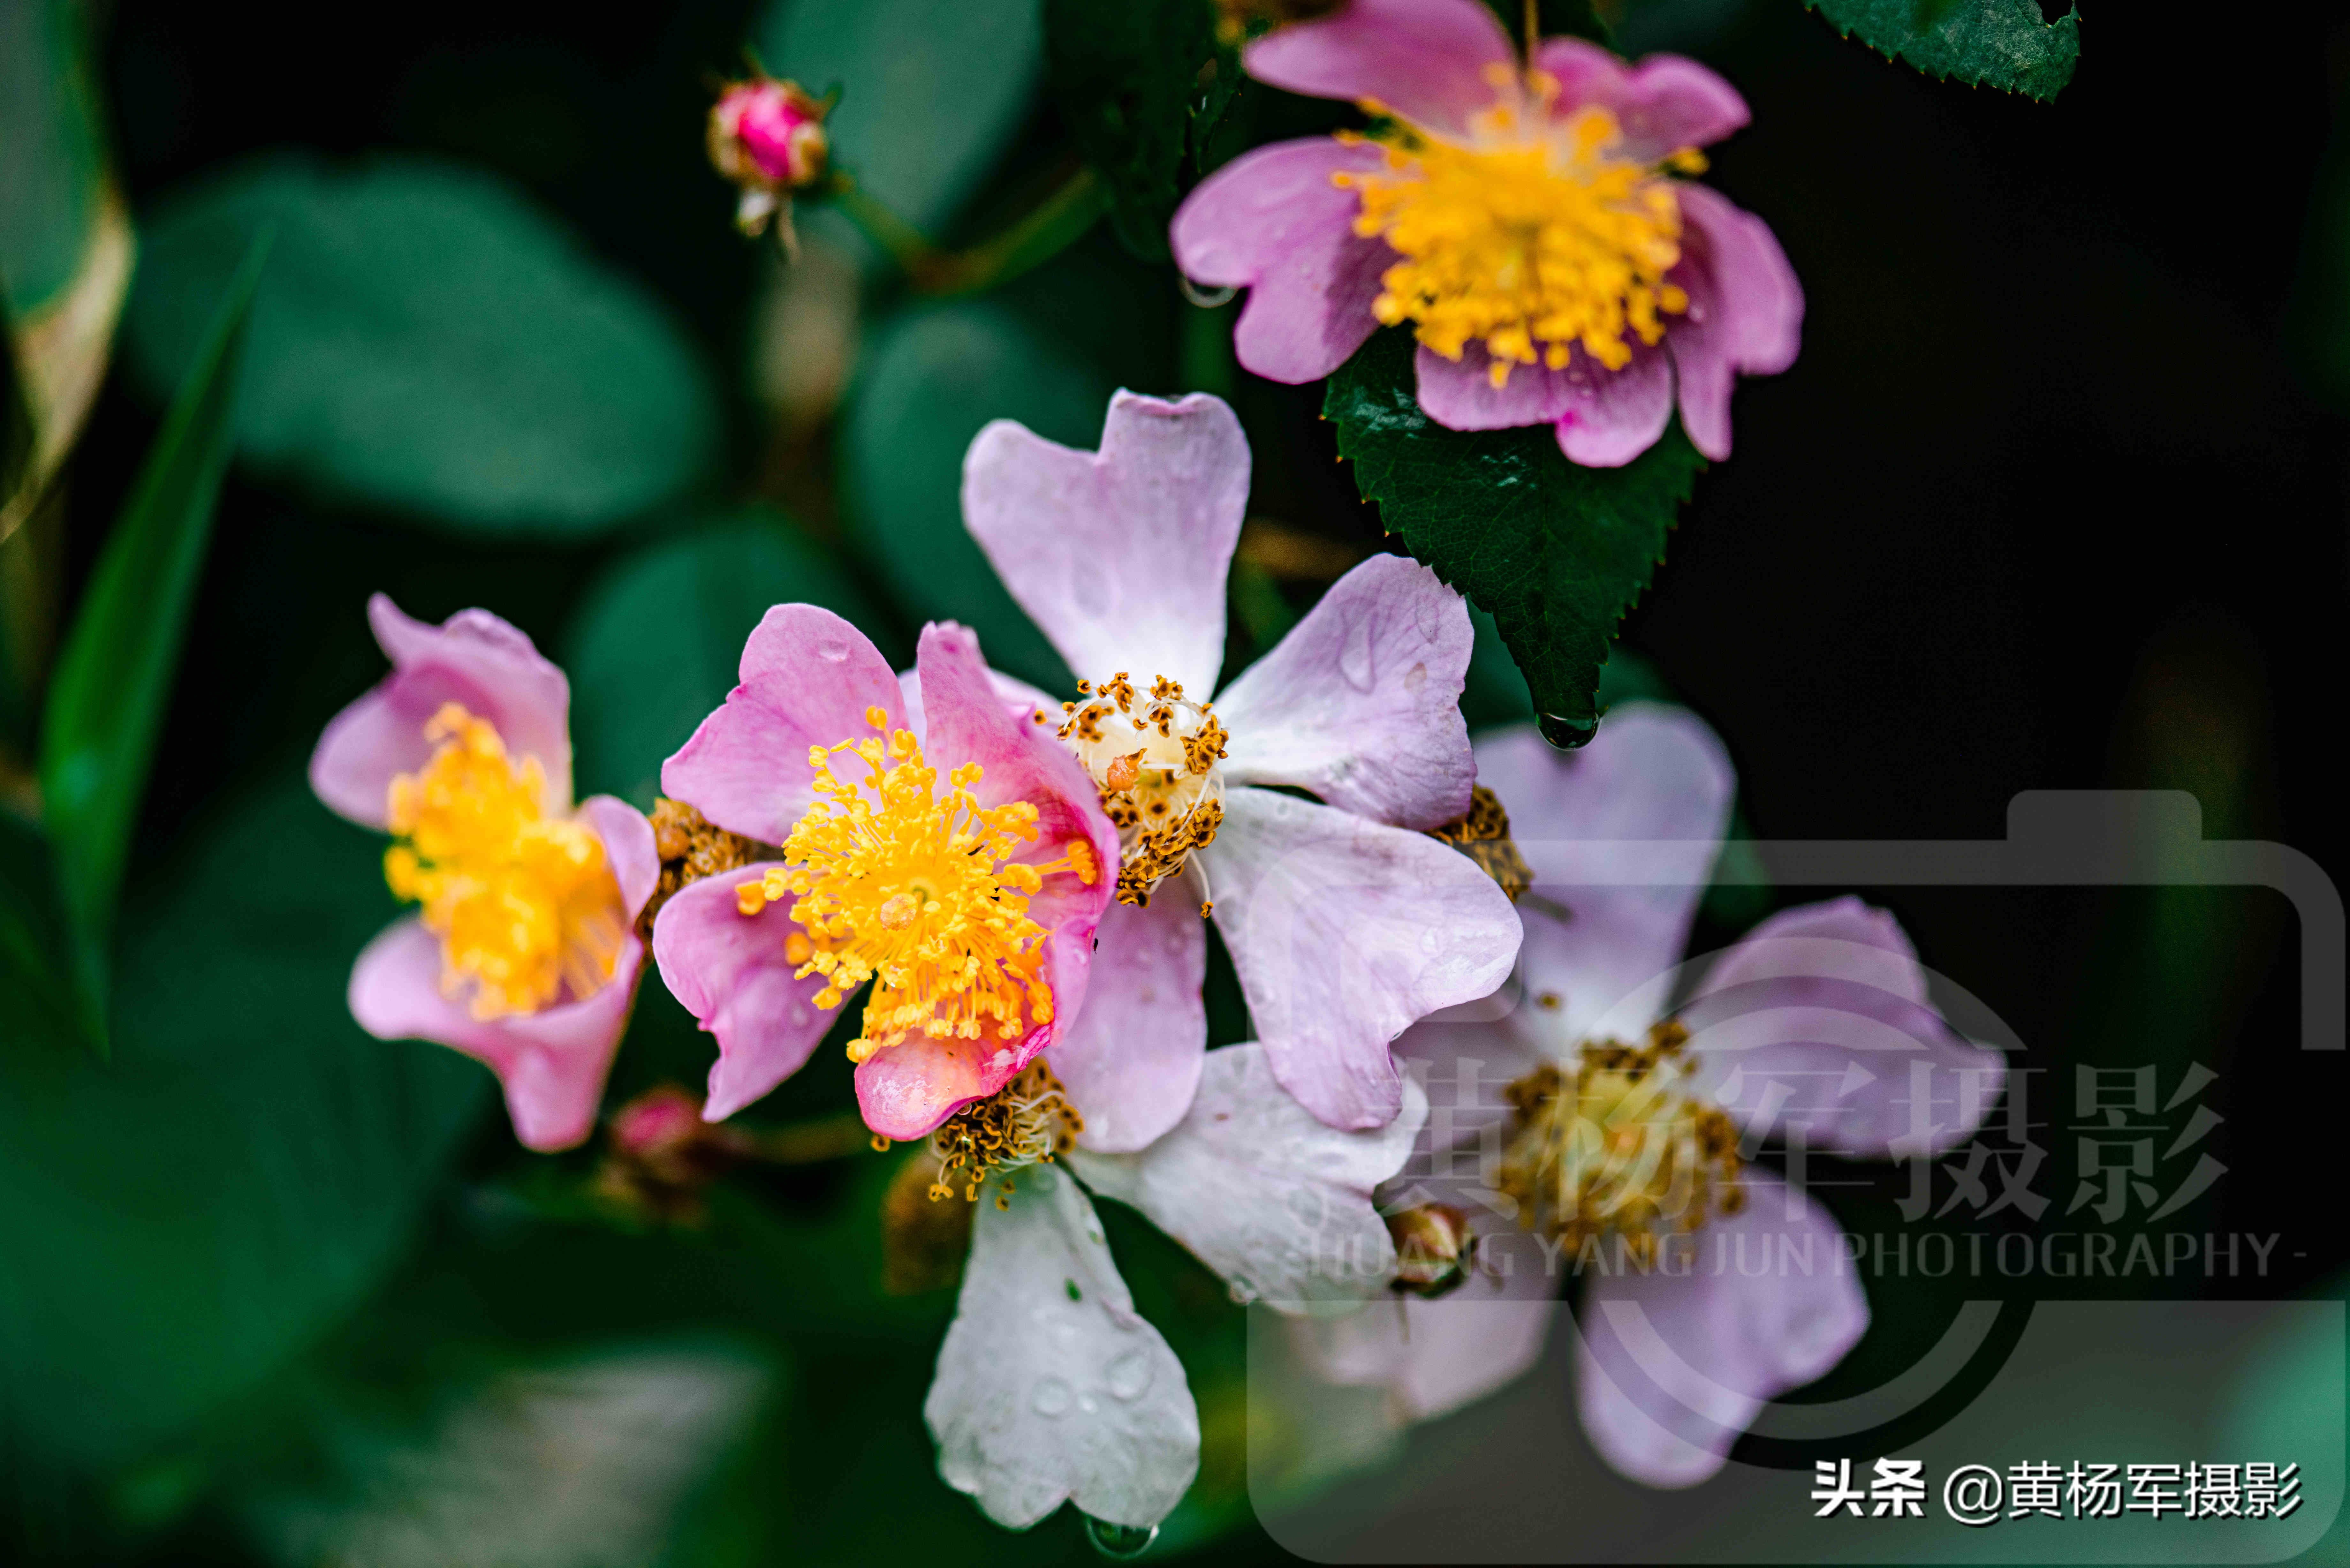 春雨中美豔盛開的野薔薇花 絢爛的花朵非常漂亮 百態常見的野花 黃楊軍攝影 Mdeditor